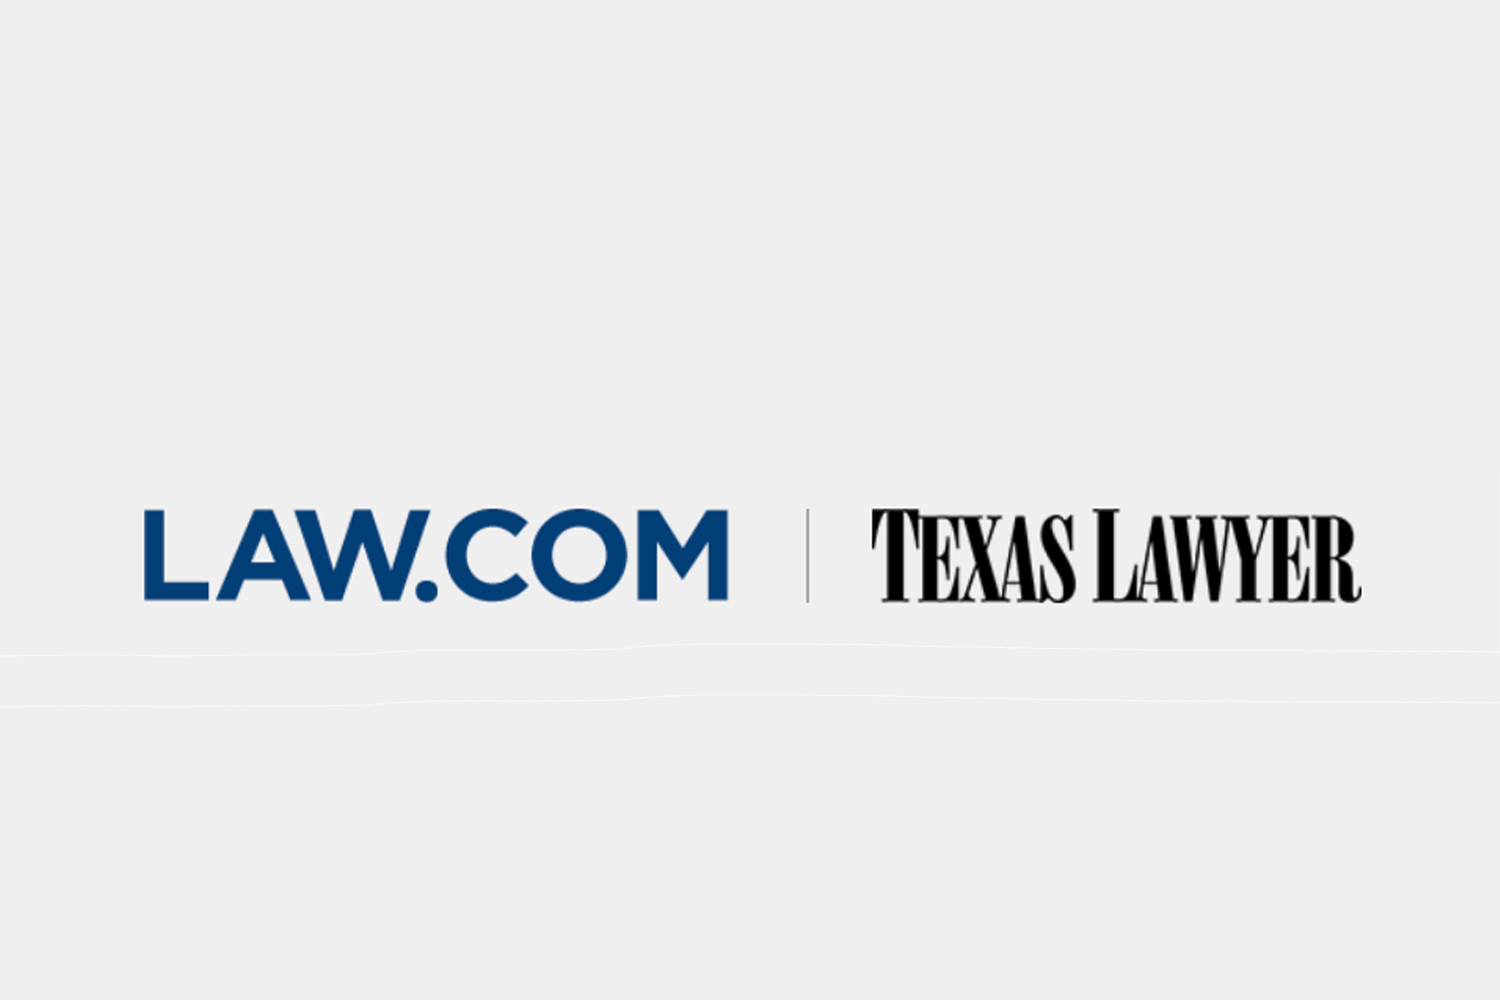 www.law.com/texaslawyer